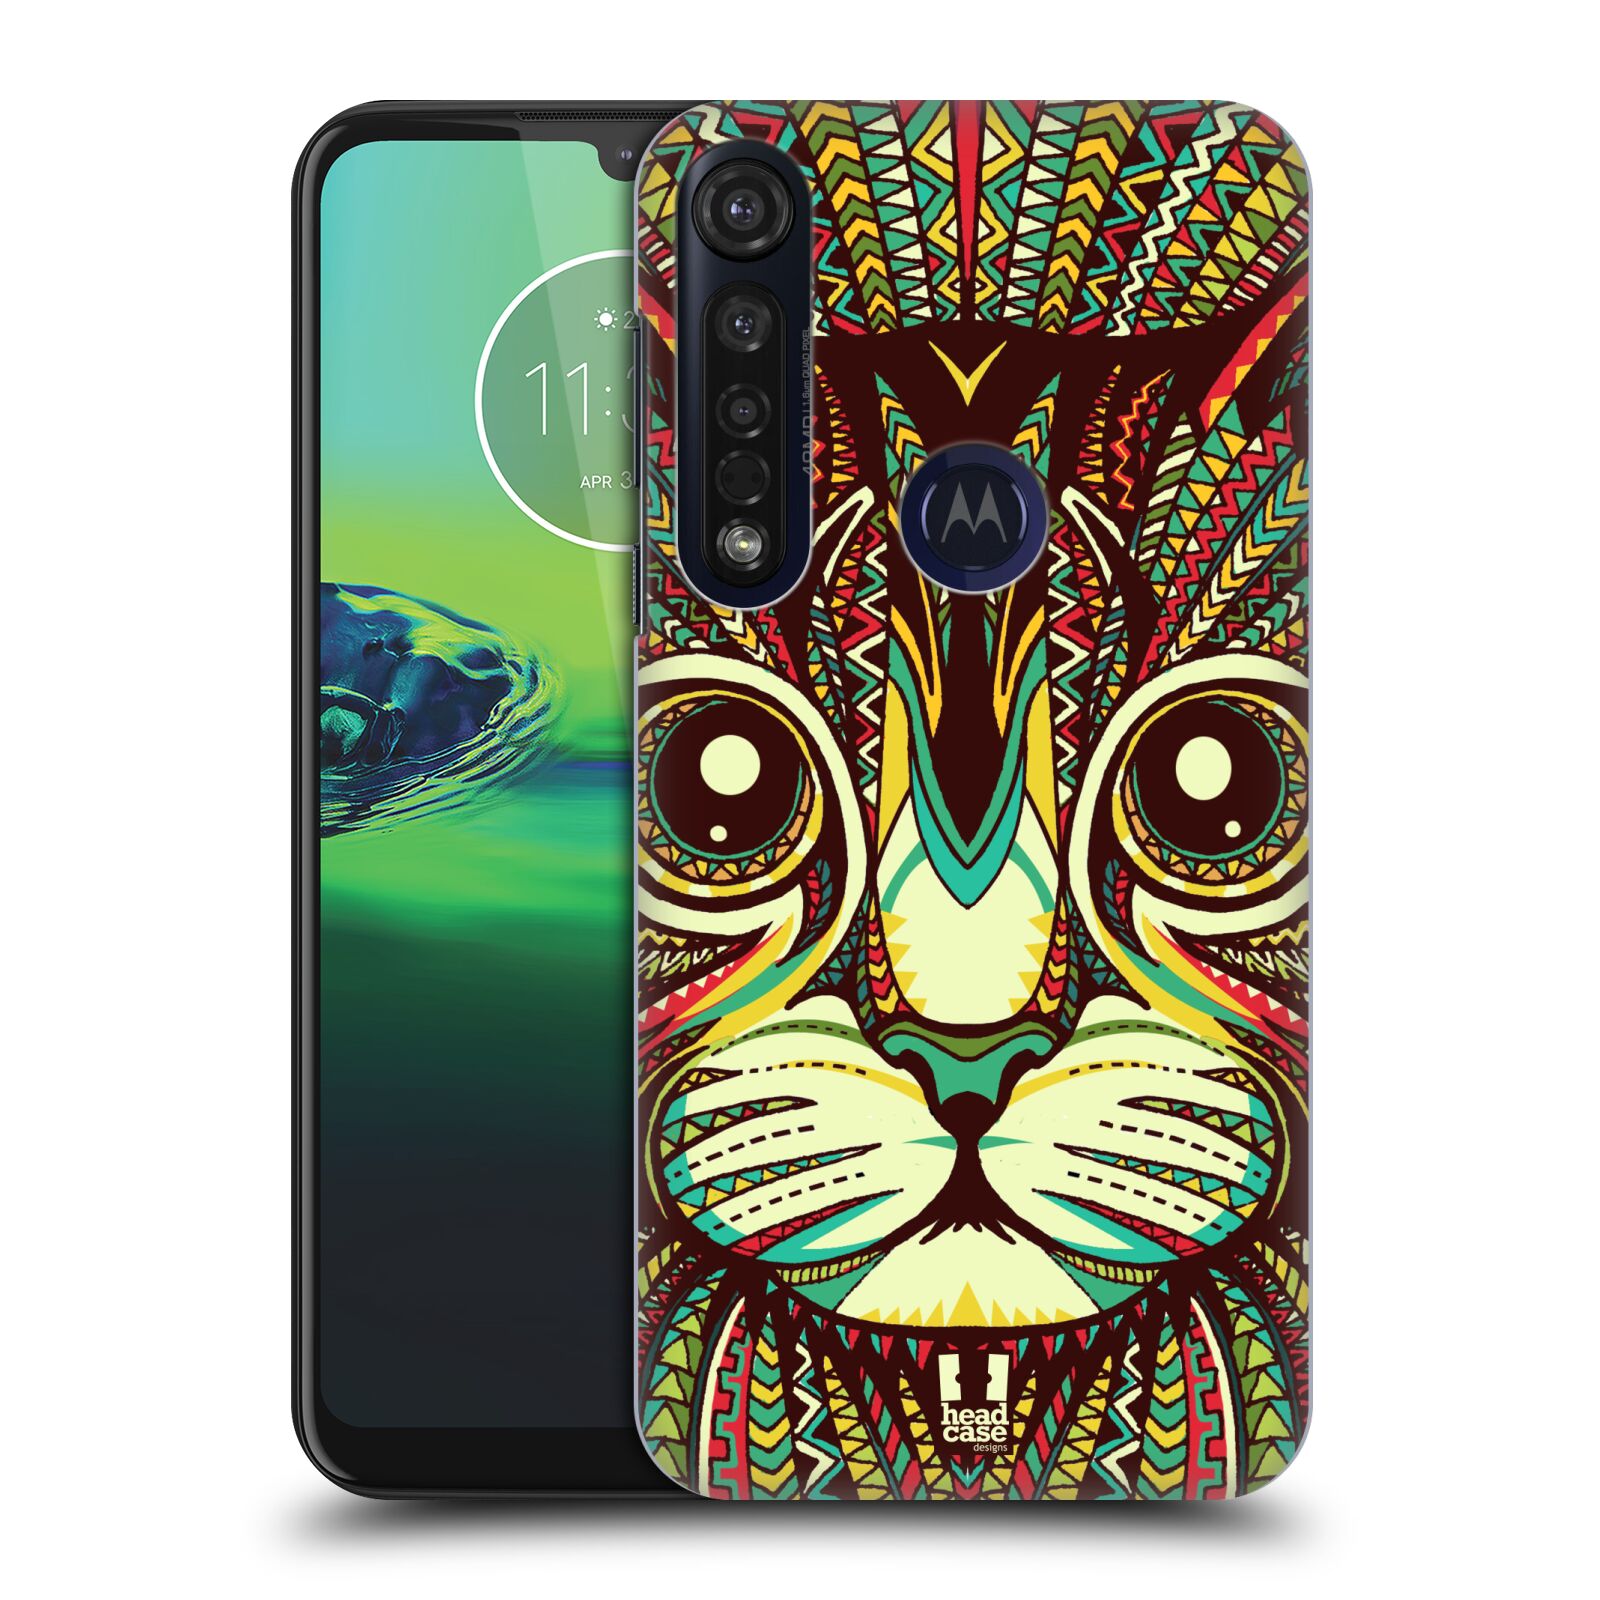 Pouzdro na mobil Motorola Moto G8 PLUS - HEAD CASE - vzor Aztécký motiv zvíře 2 kotě